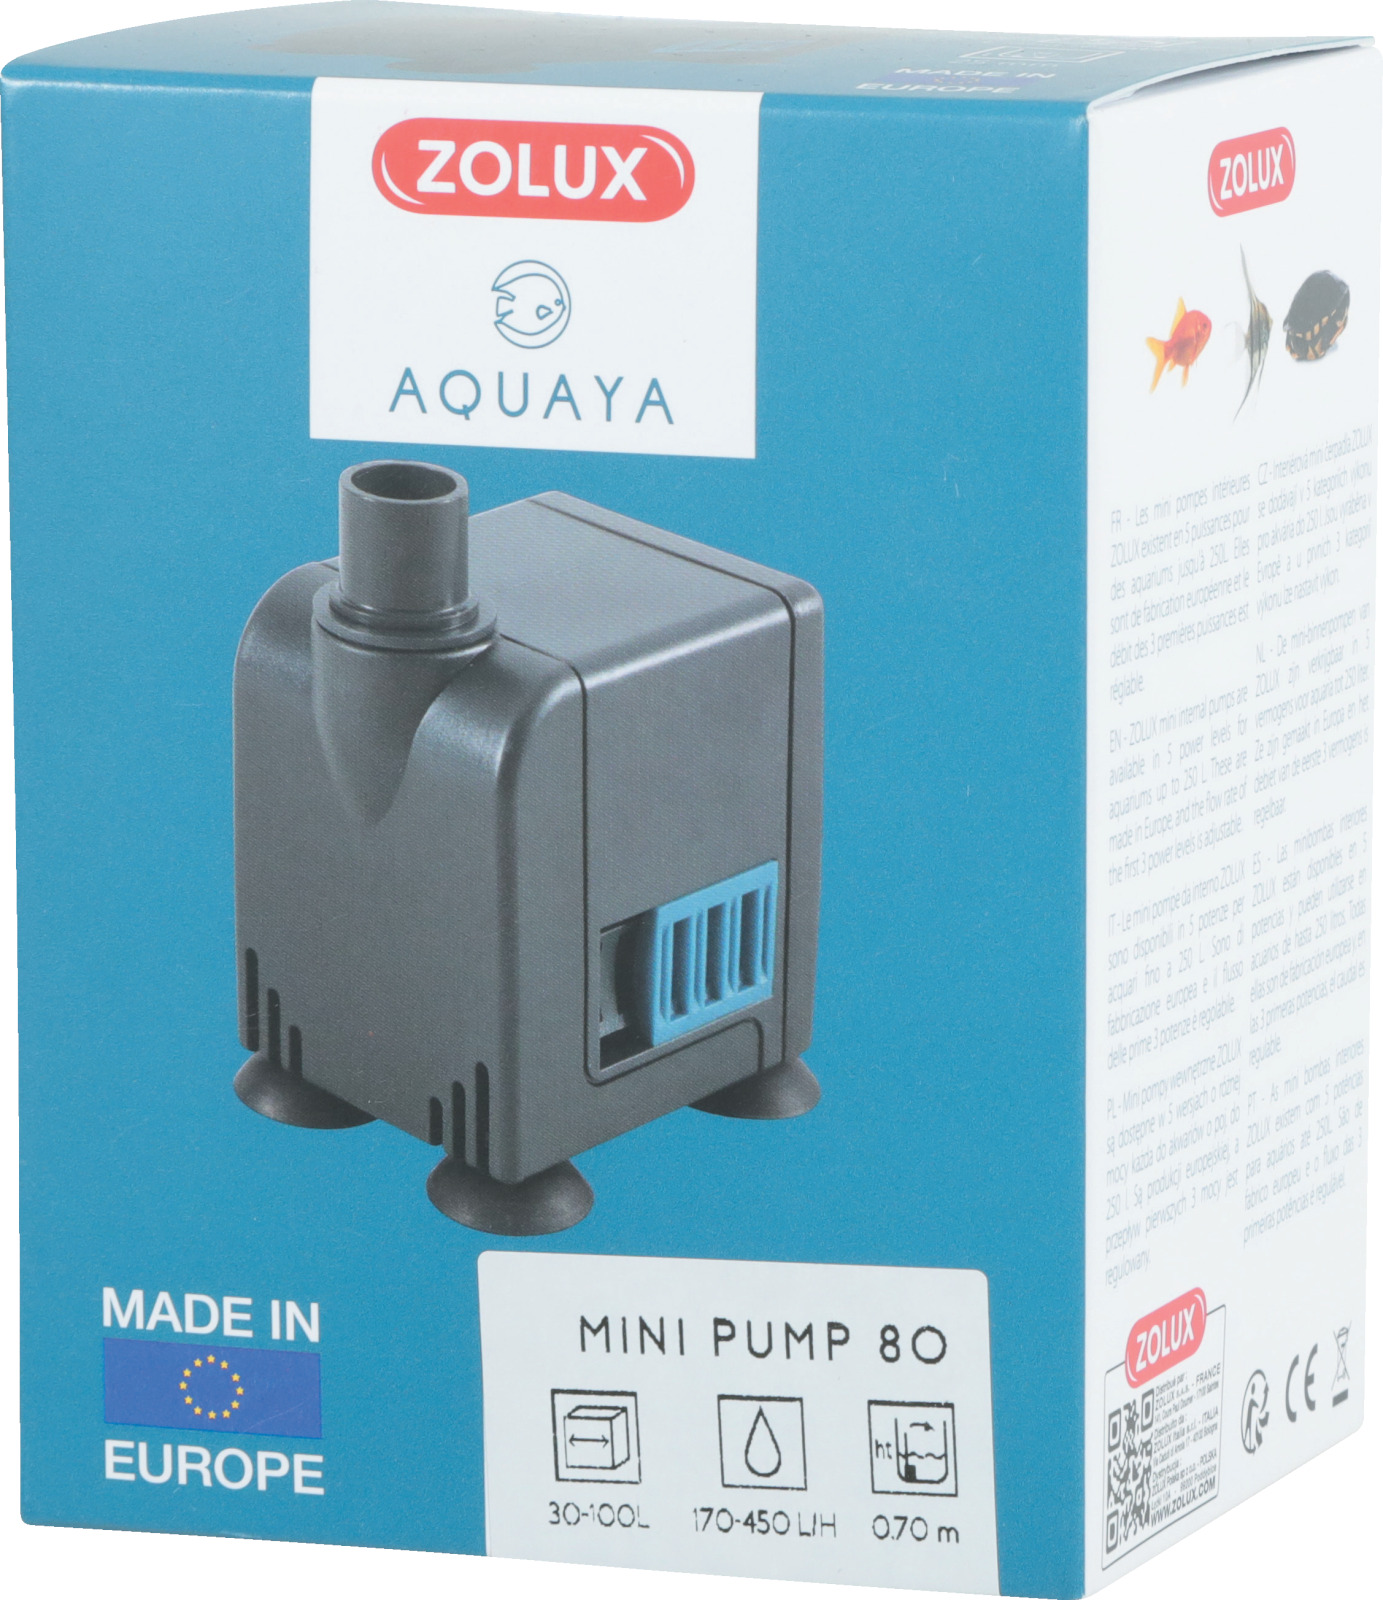 ZOLUX Aquaya Mini Pump 80 pompe avec débit réglable de 170 à 450 L